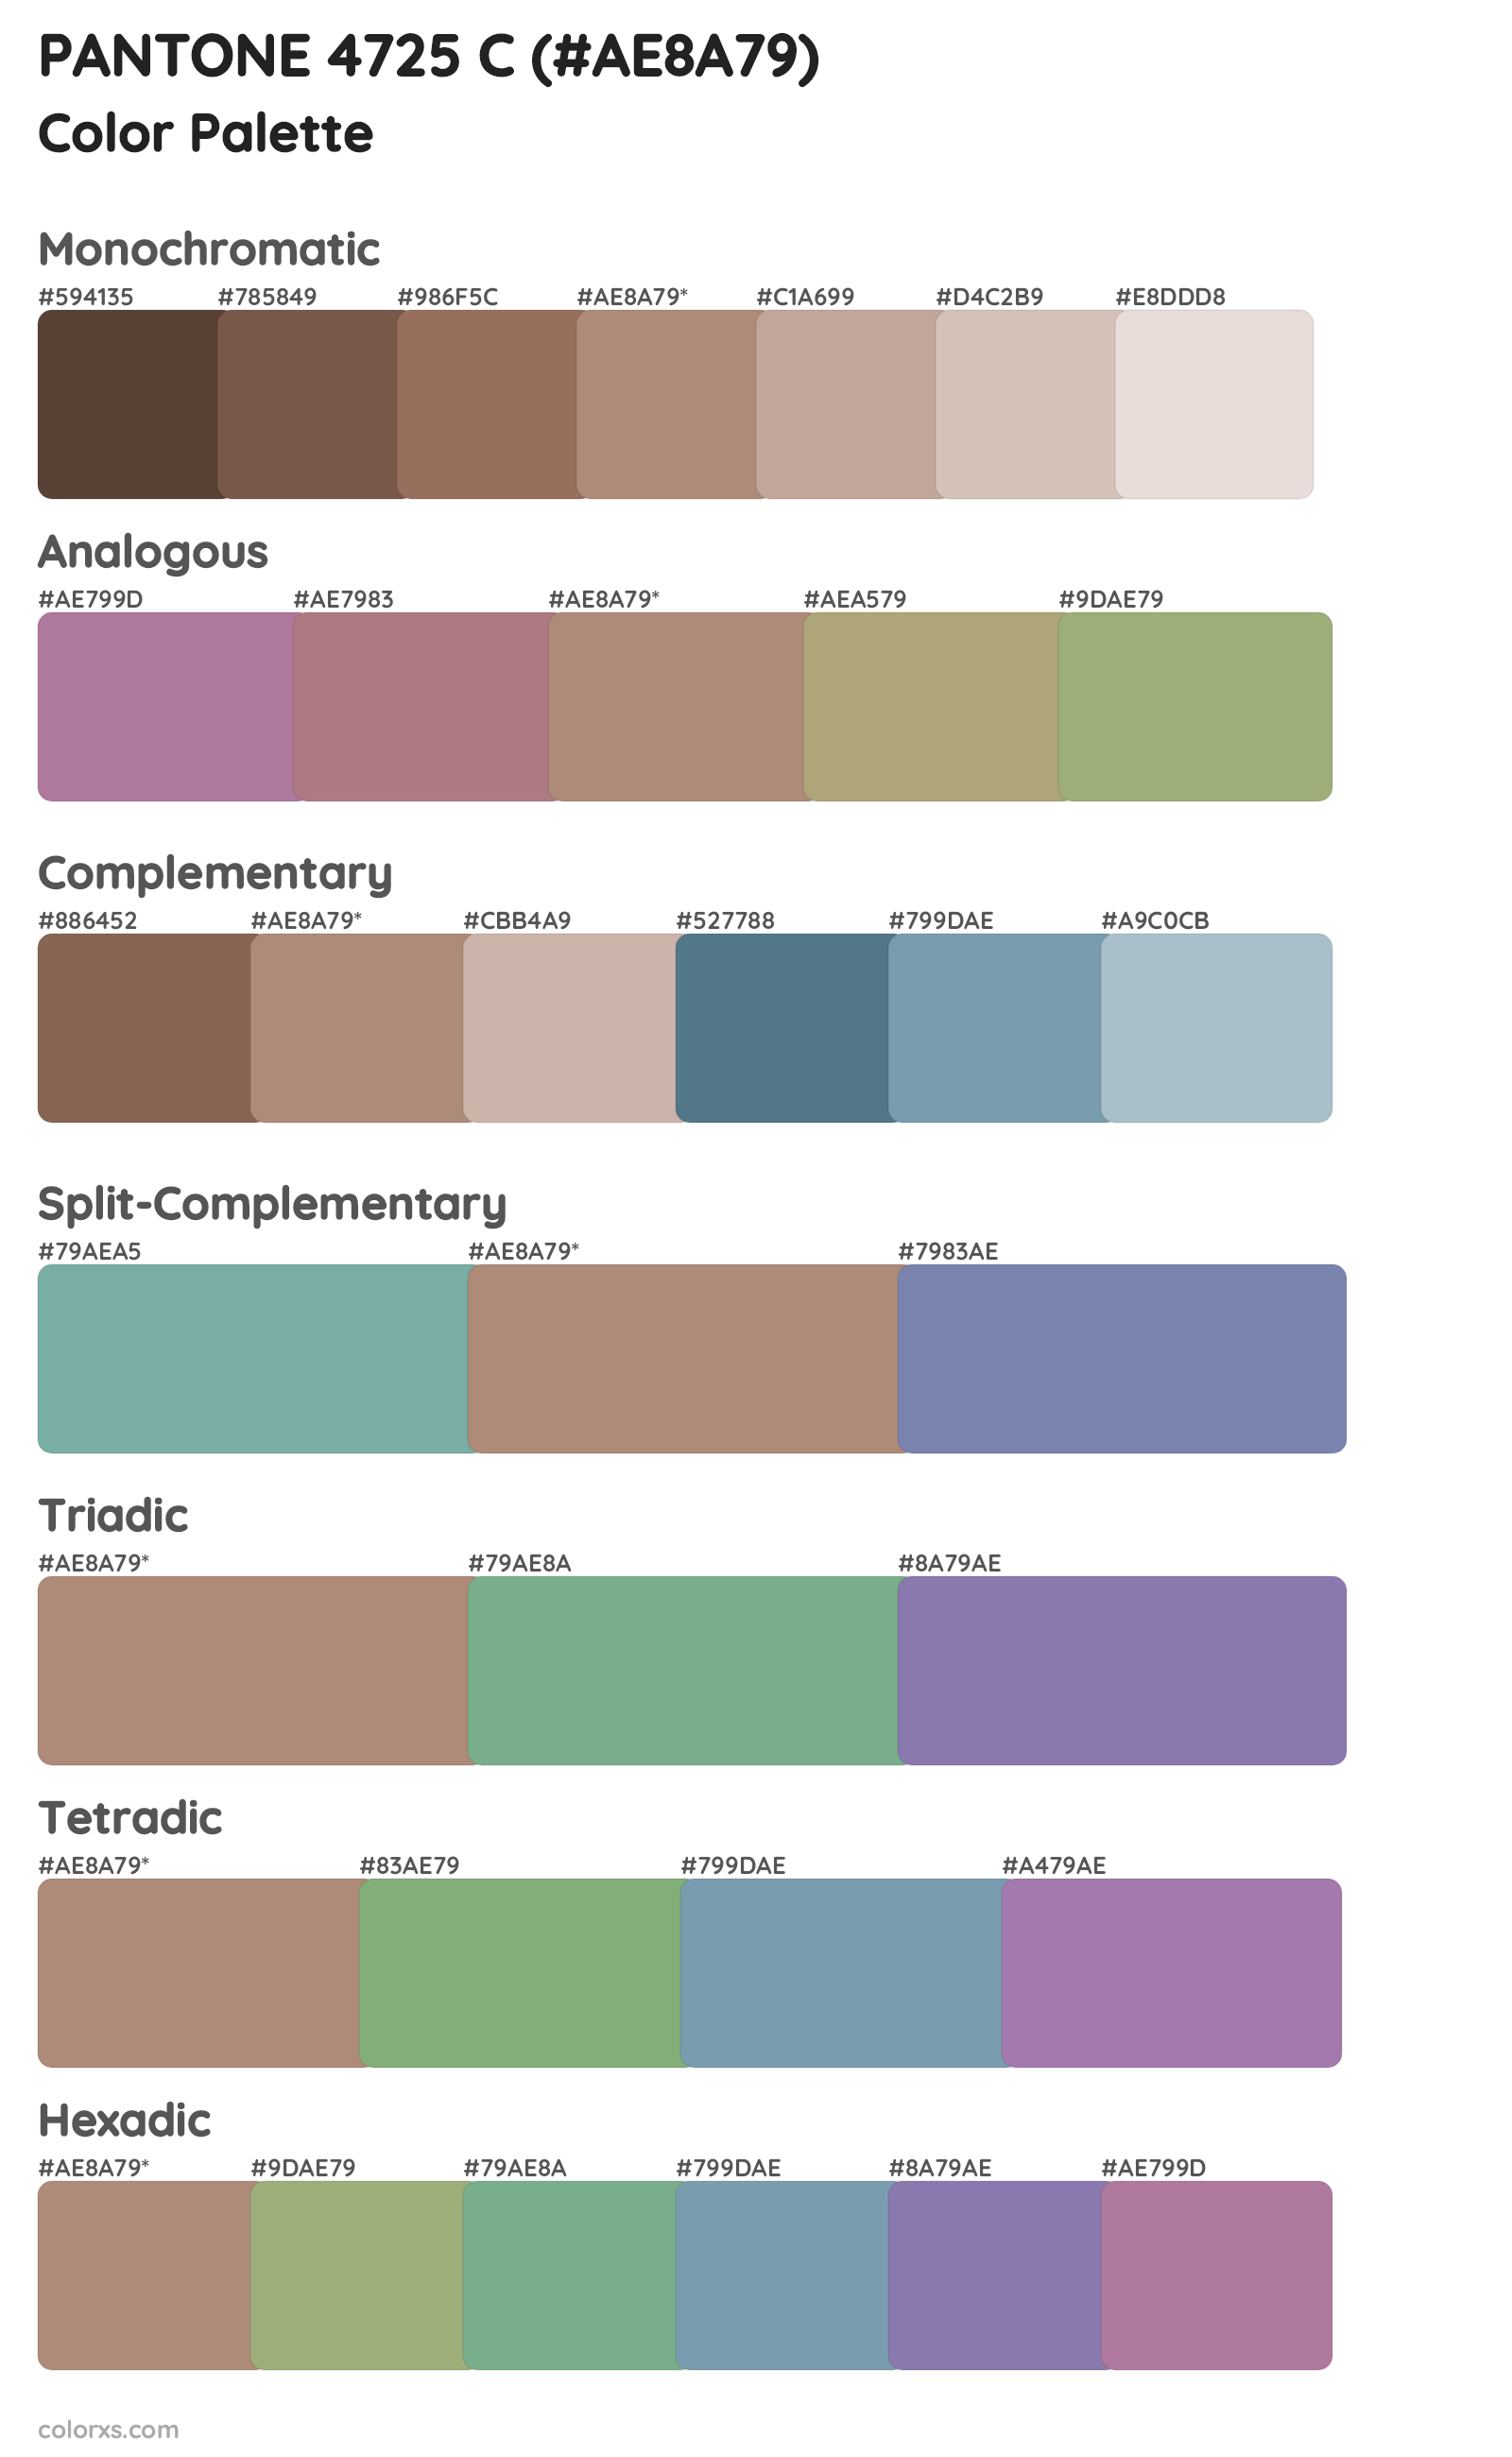 PANTONE 4725 C Color Scheme Palettes